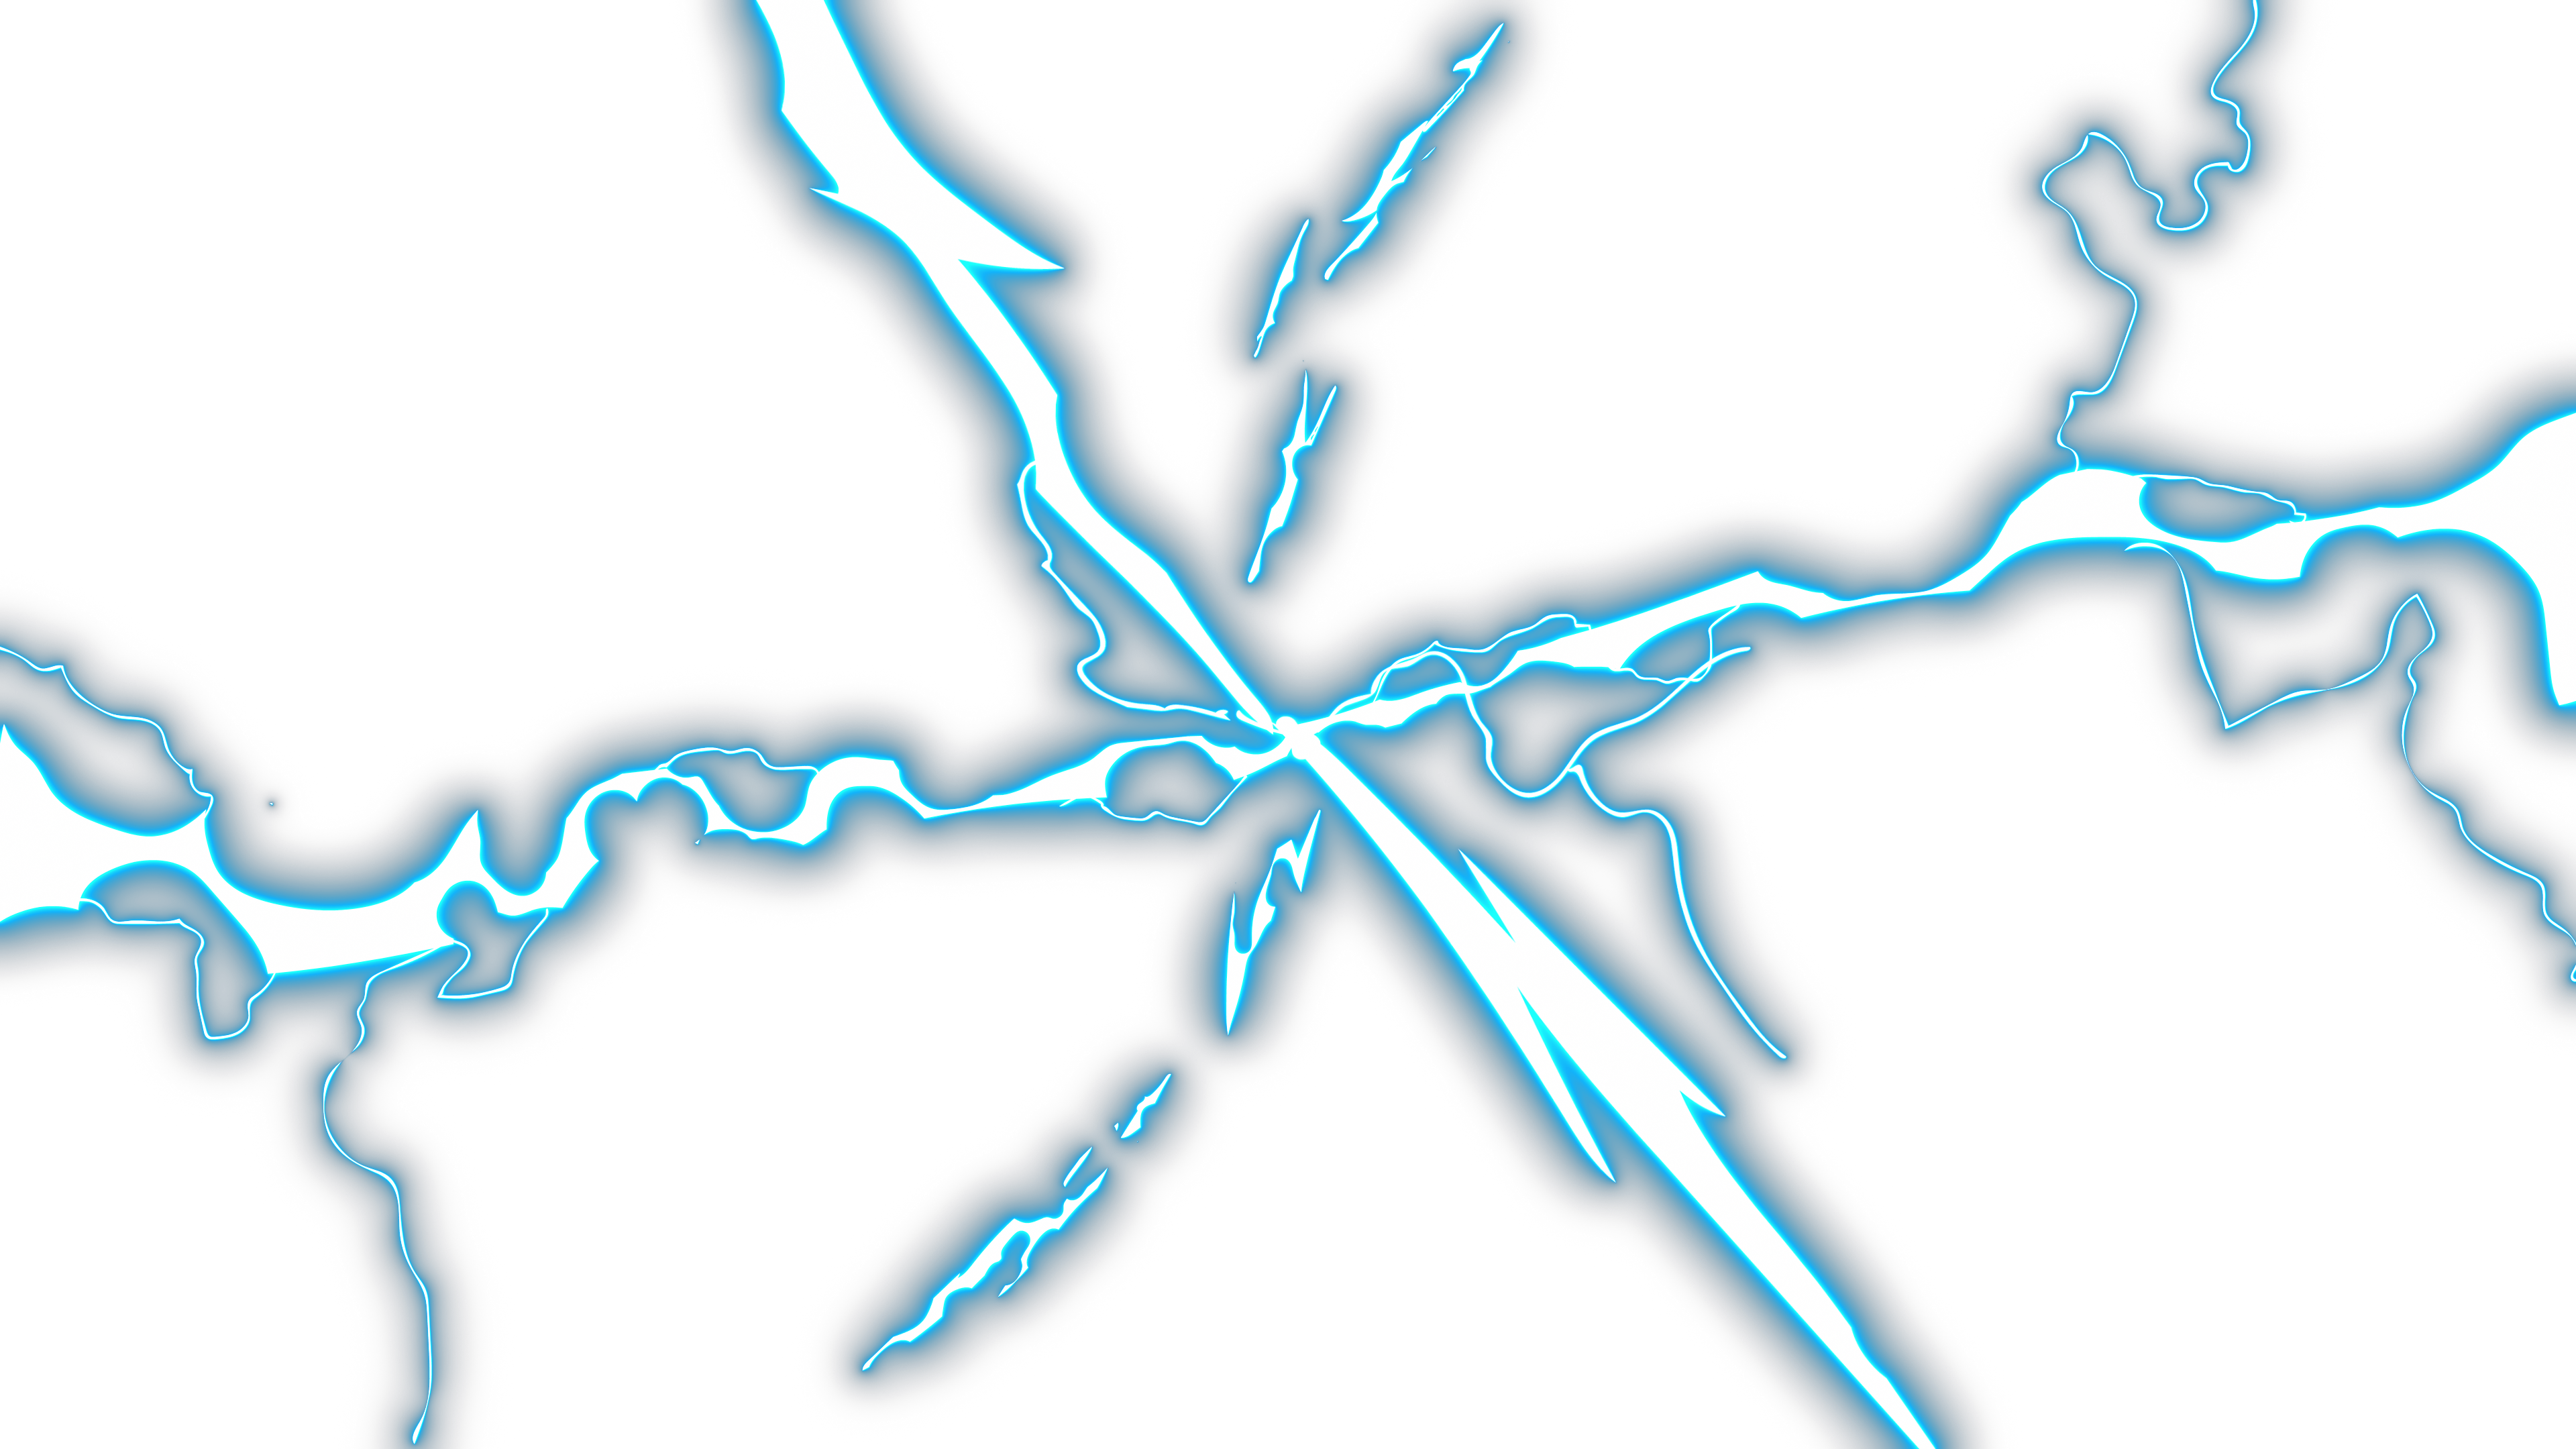 Anime Lightning Transition 3 Effect sẽ khiến bất kỳ ai xem đều không khỏi phấn khích. Với những cạnh sáng đầy hiện đại và cuốn hút, hiệu ứng chuyển cảnh này sẽ tạo nên một sức hút đặc biệt và khó quên cho bộ sưu tập hình ảnh của bạn. Tải về Anime Lightning Transition Download ngay hôm nay nhé.